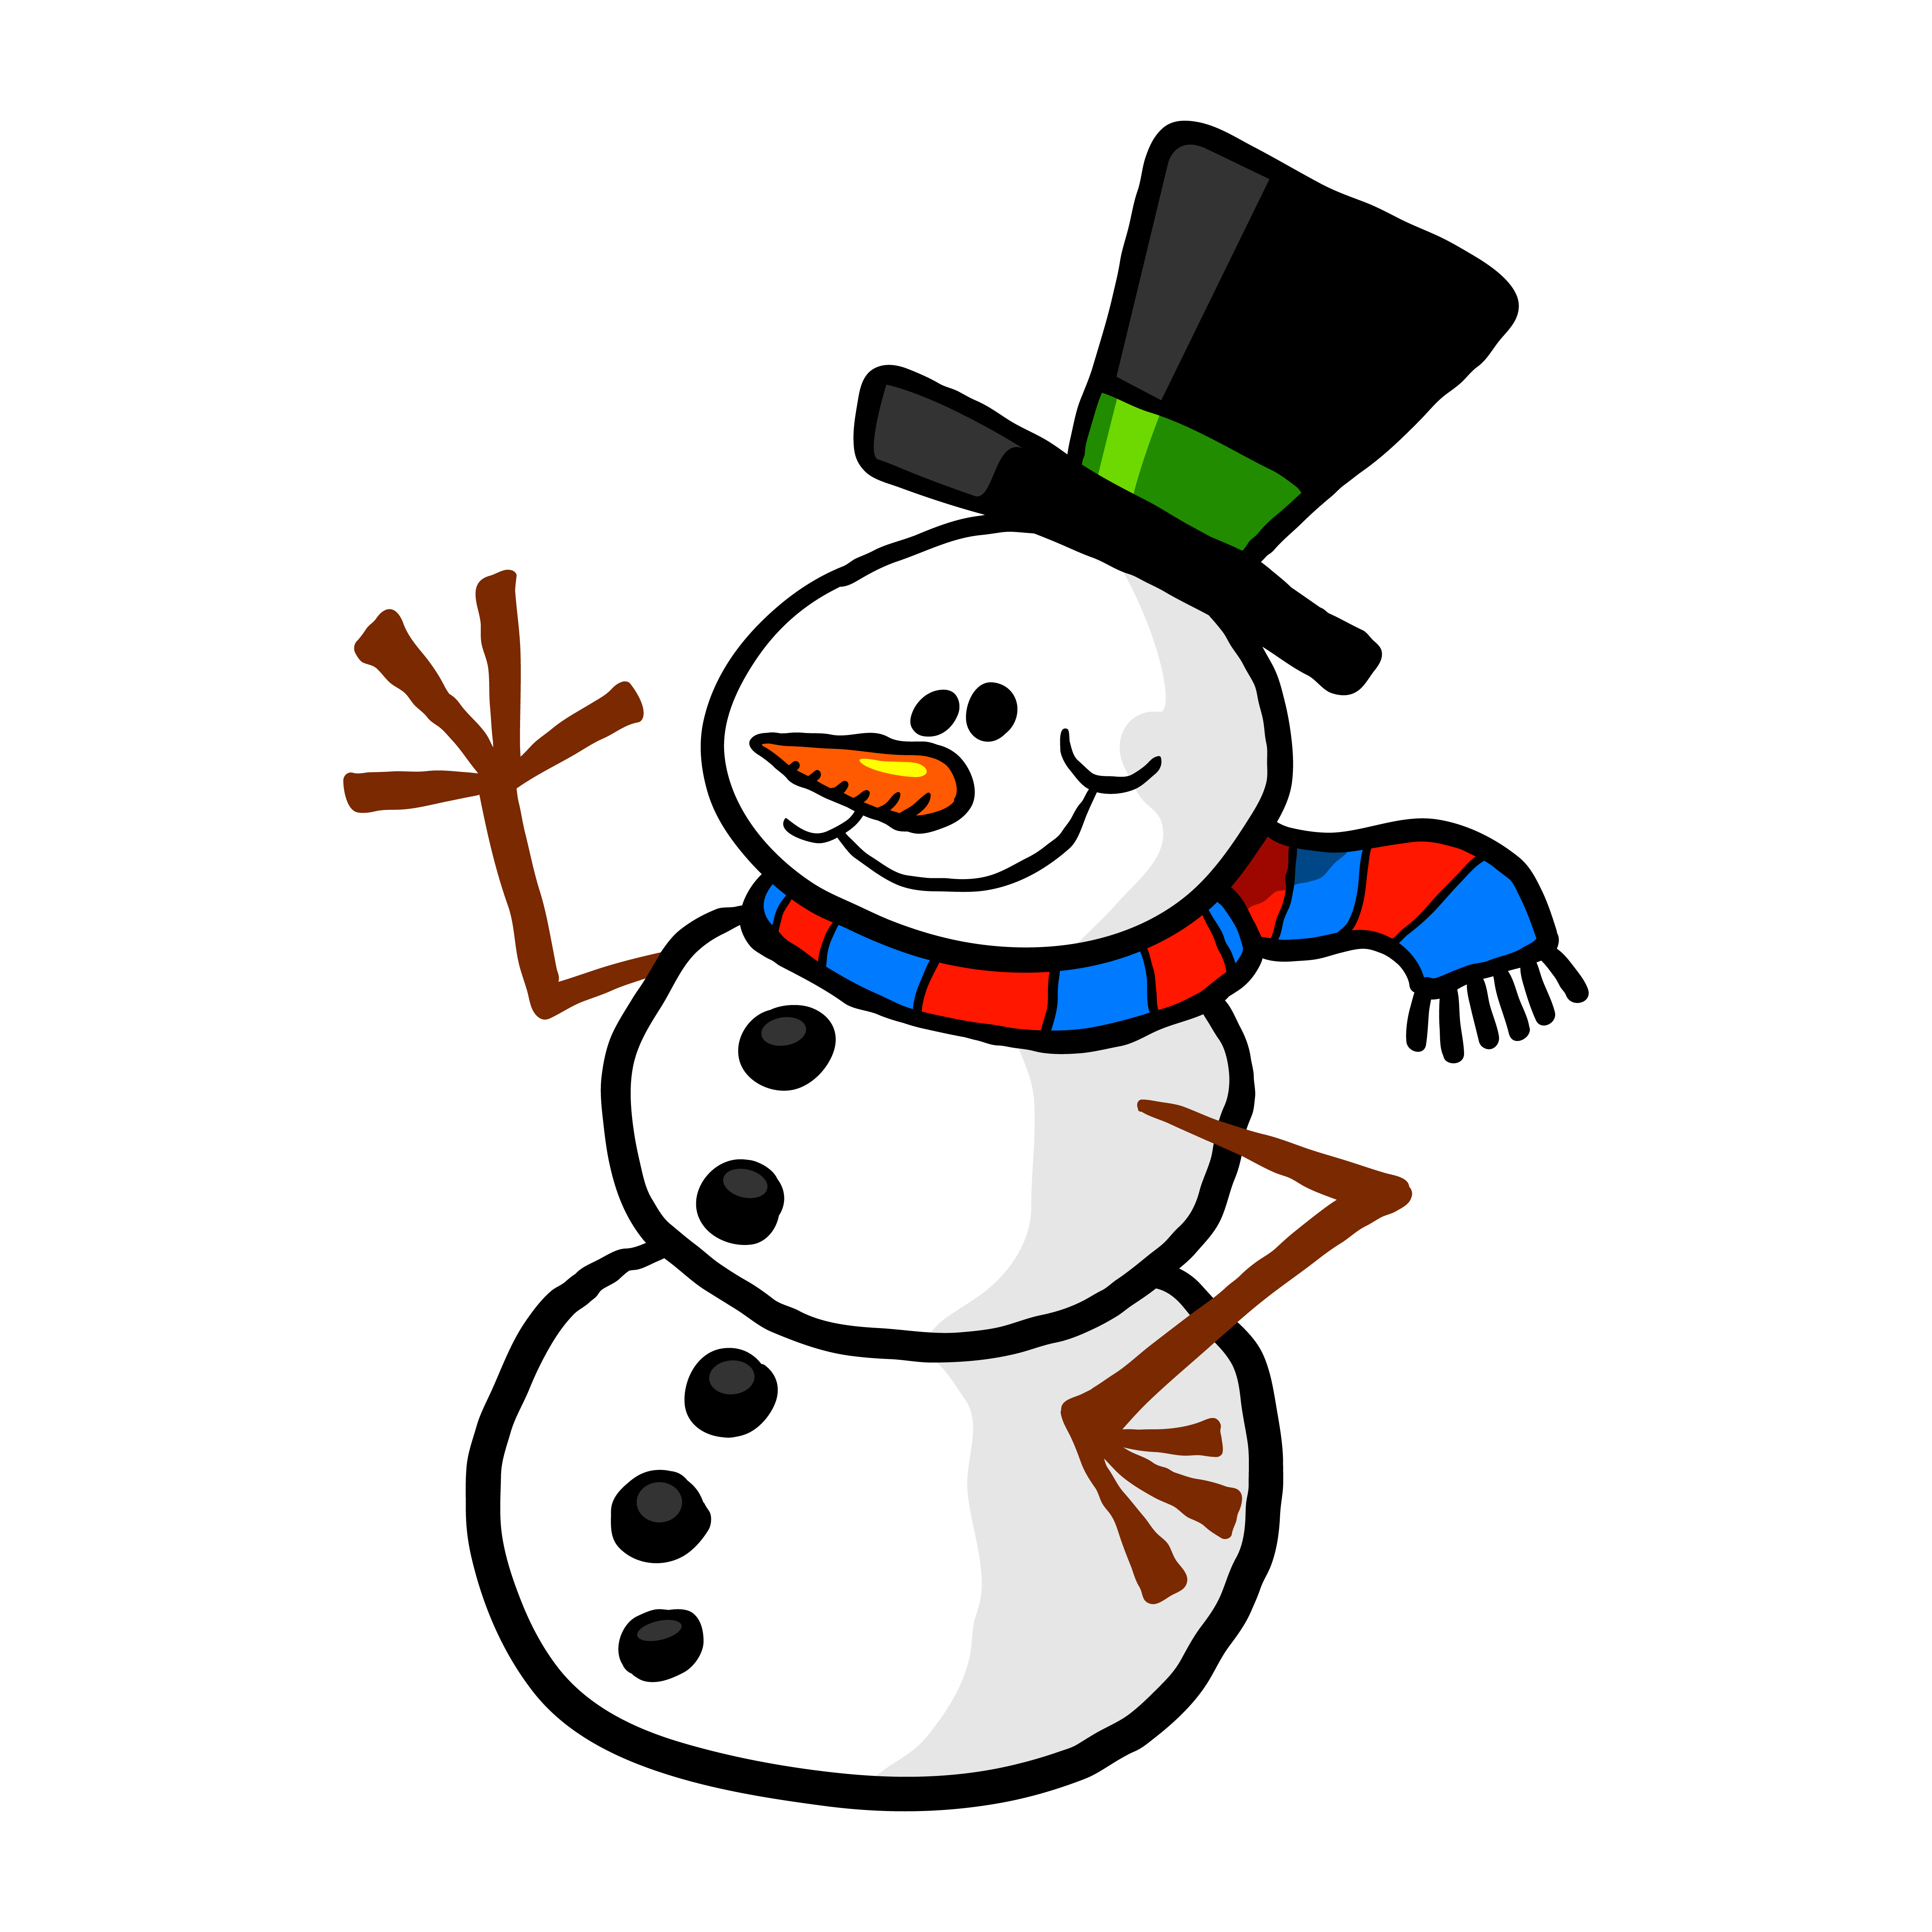 Snowman Cartoon Vector Illustration Download Free Vectors Clipart Graphics Vector Art